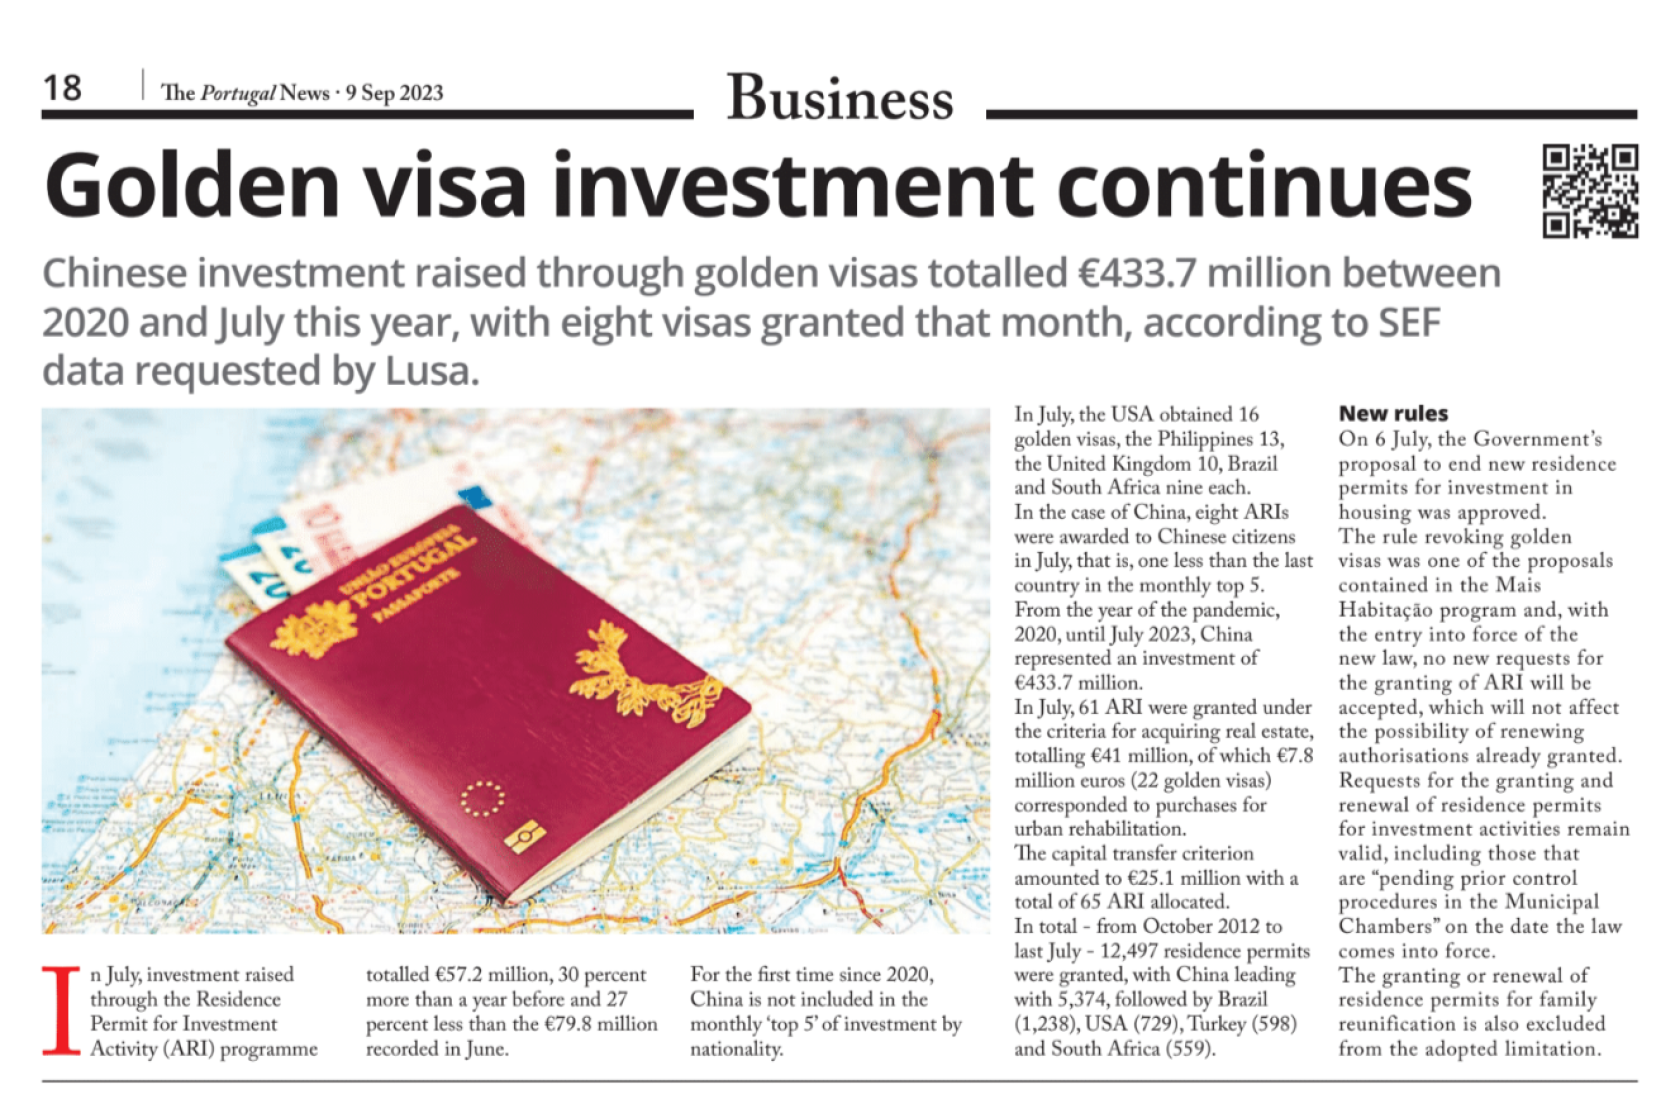 L'investissement dans la visa dorée se poursuit